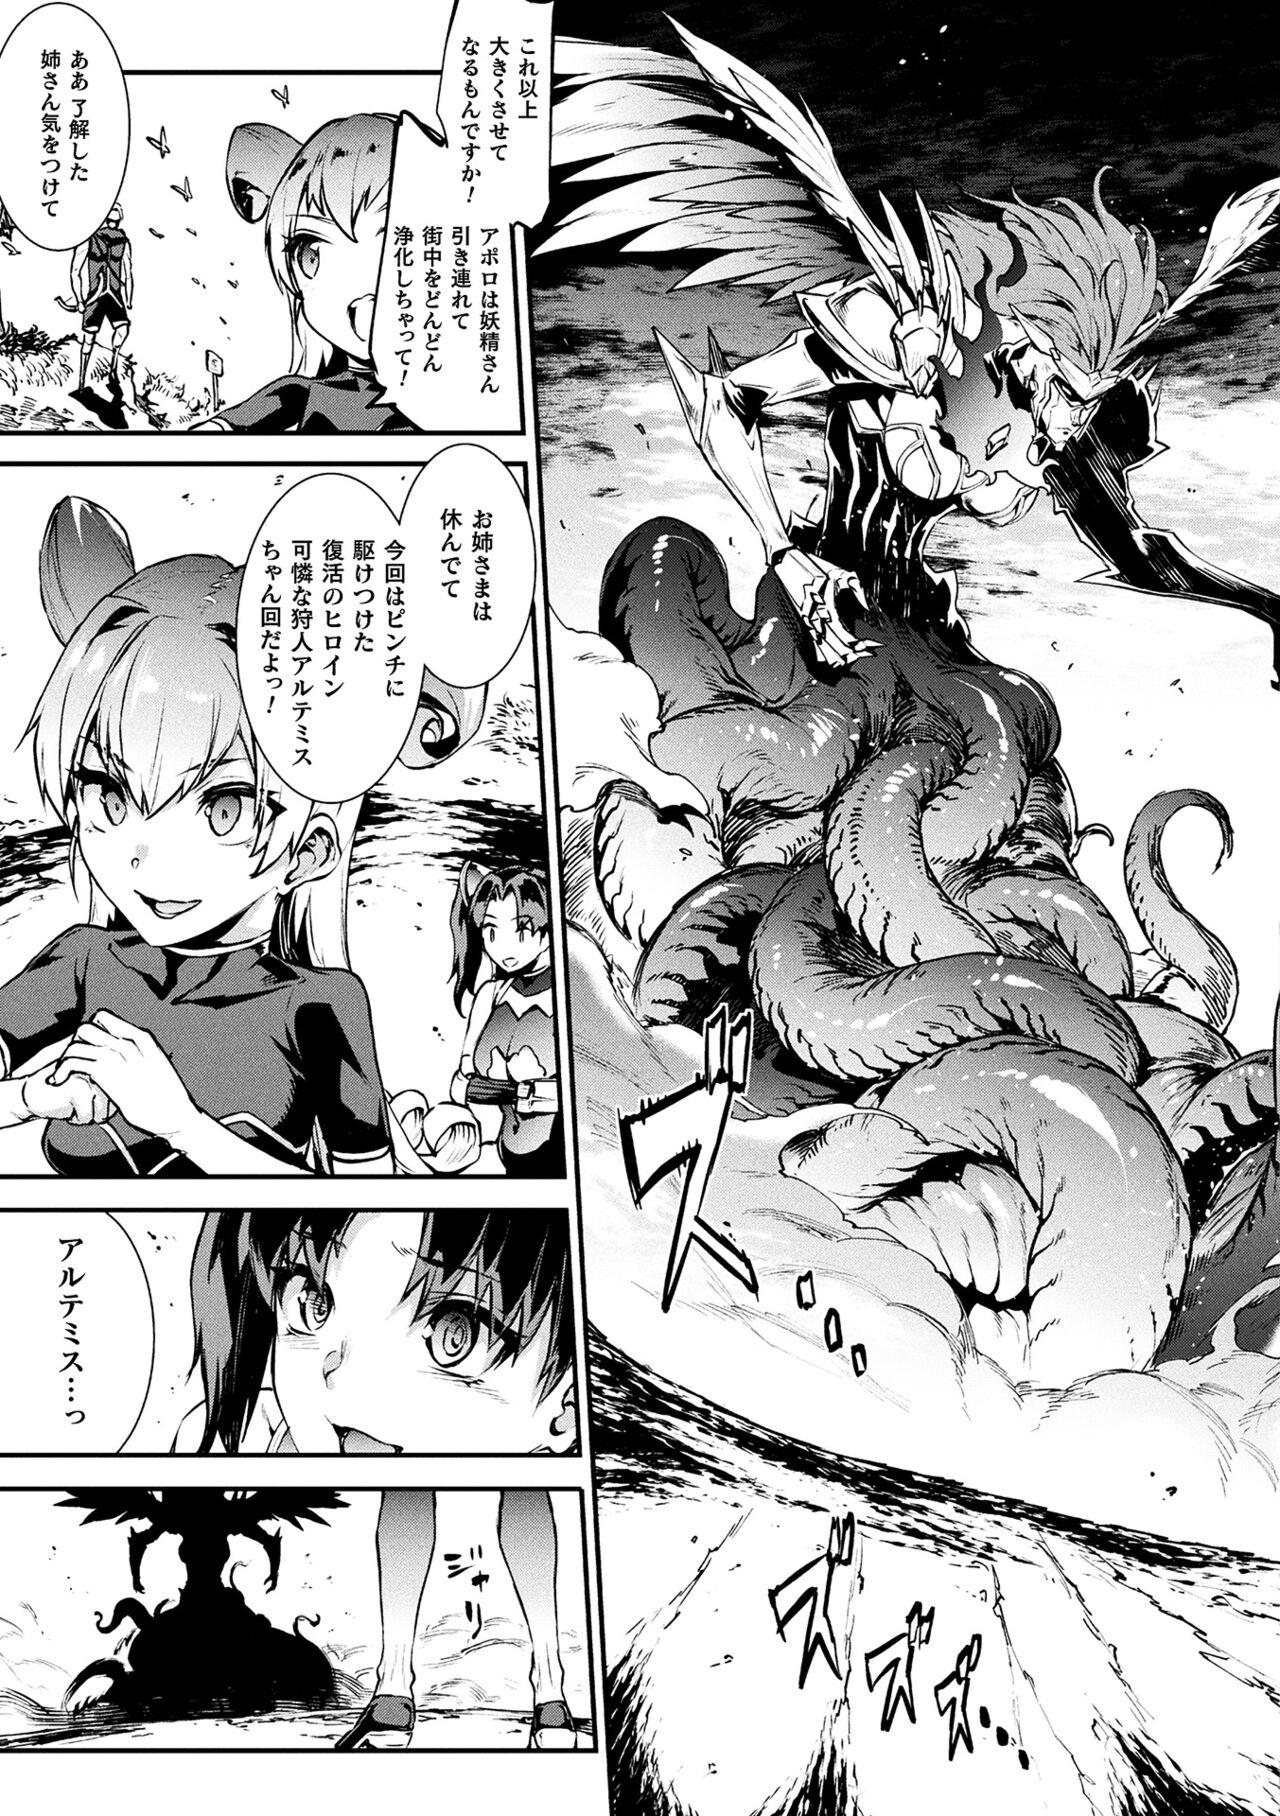 [Erect Sawaru] Raikou Shinki Igis Magia III -PANDRA saga 3rd ignition- 4 [Digital] 48